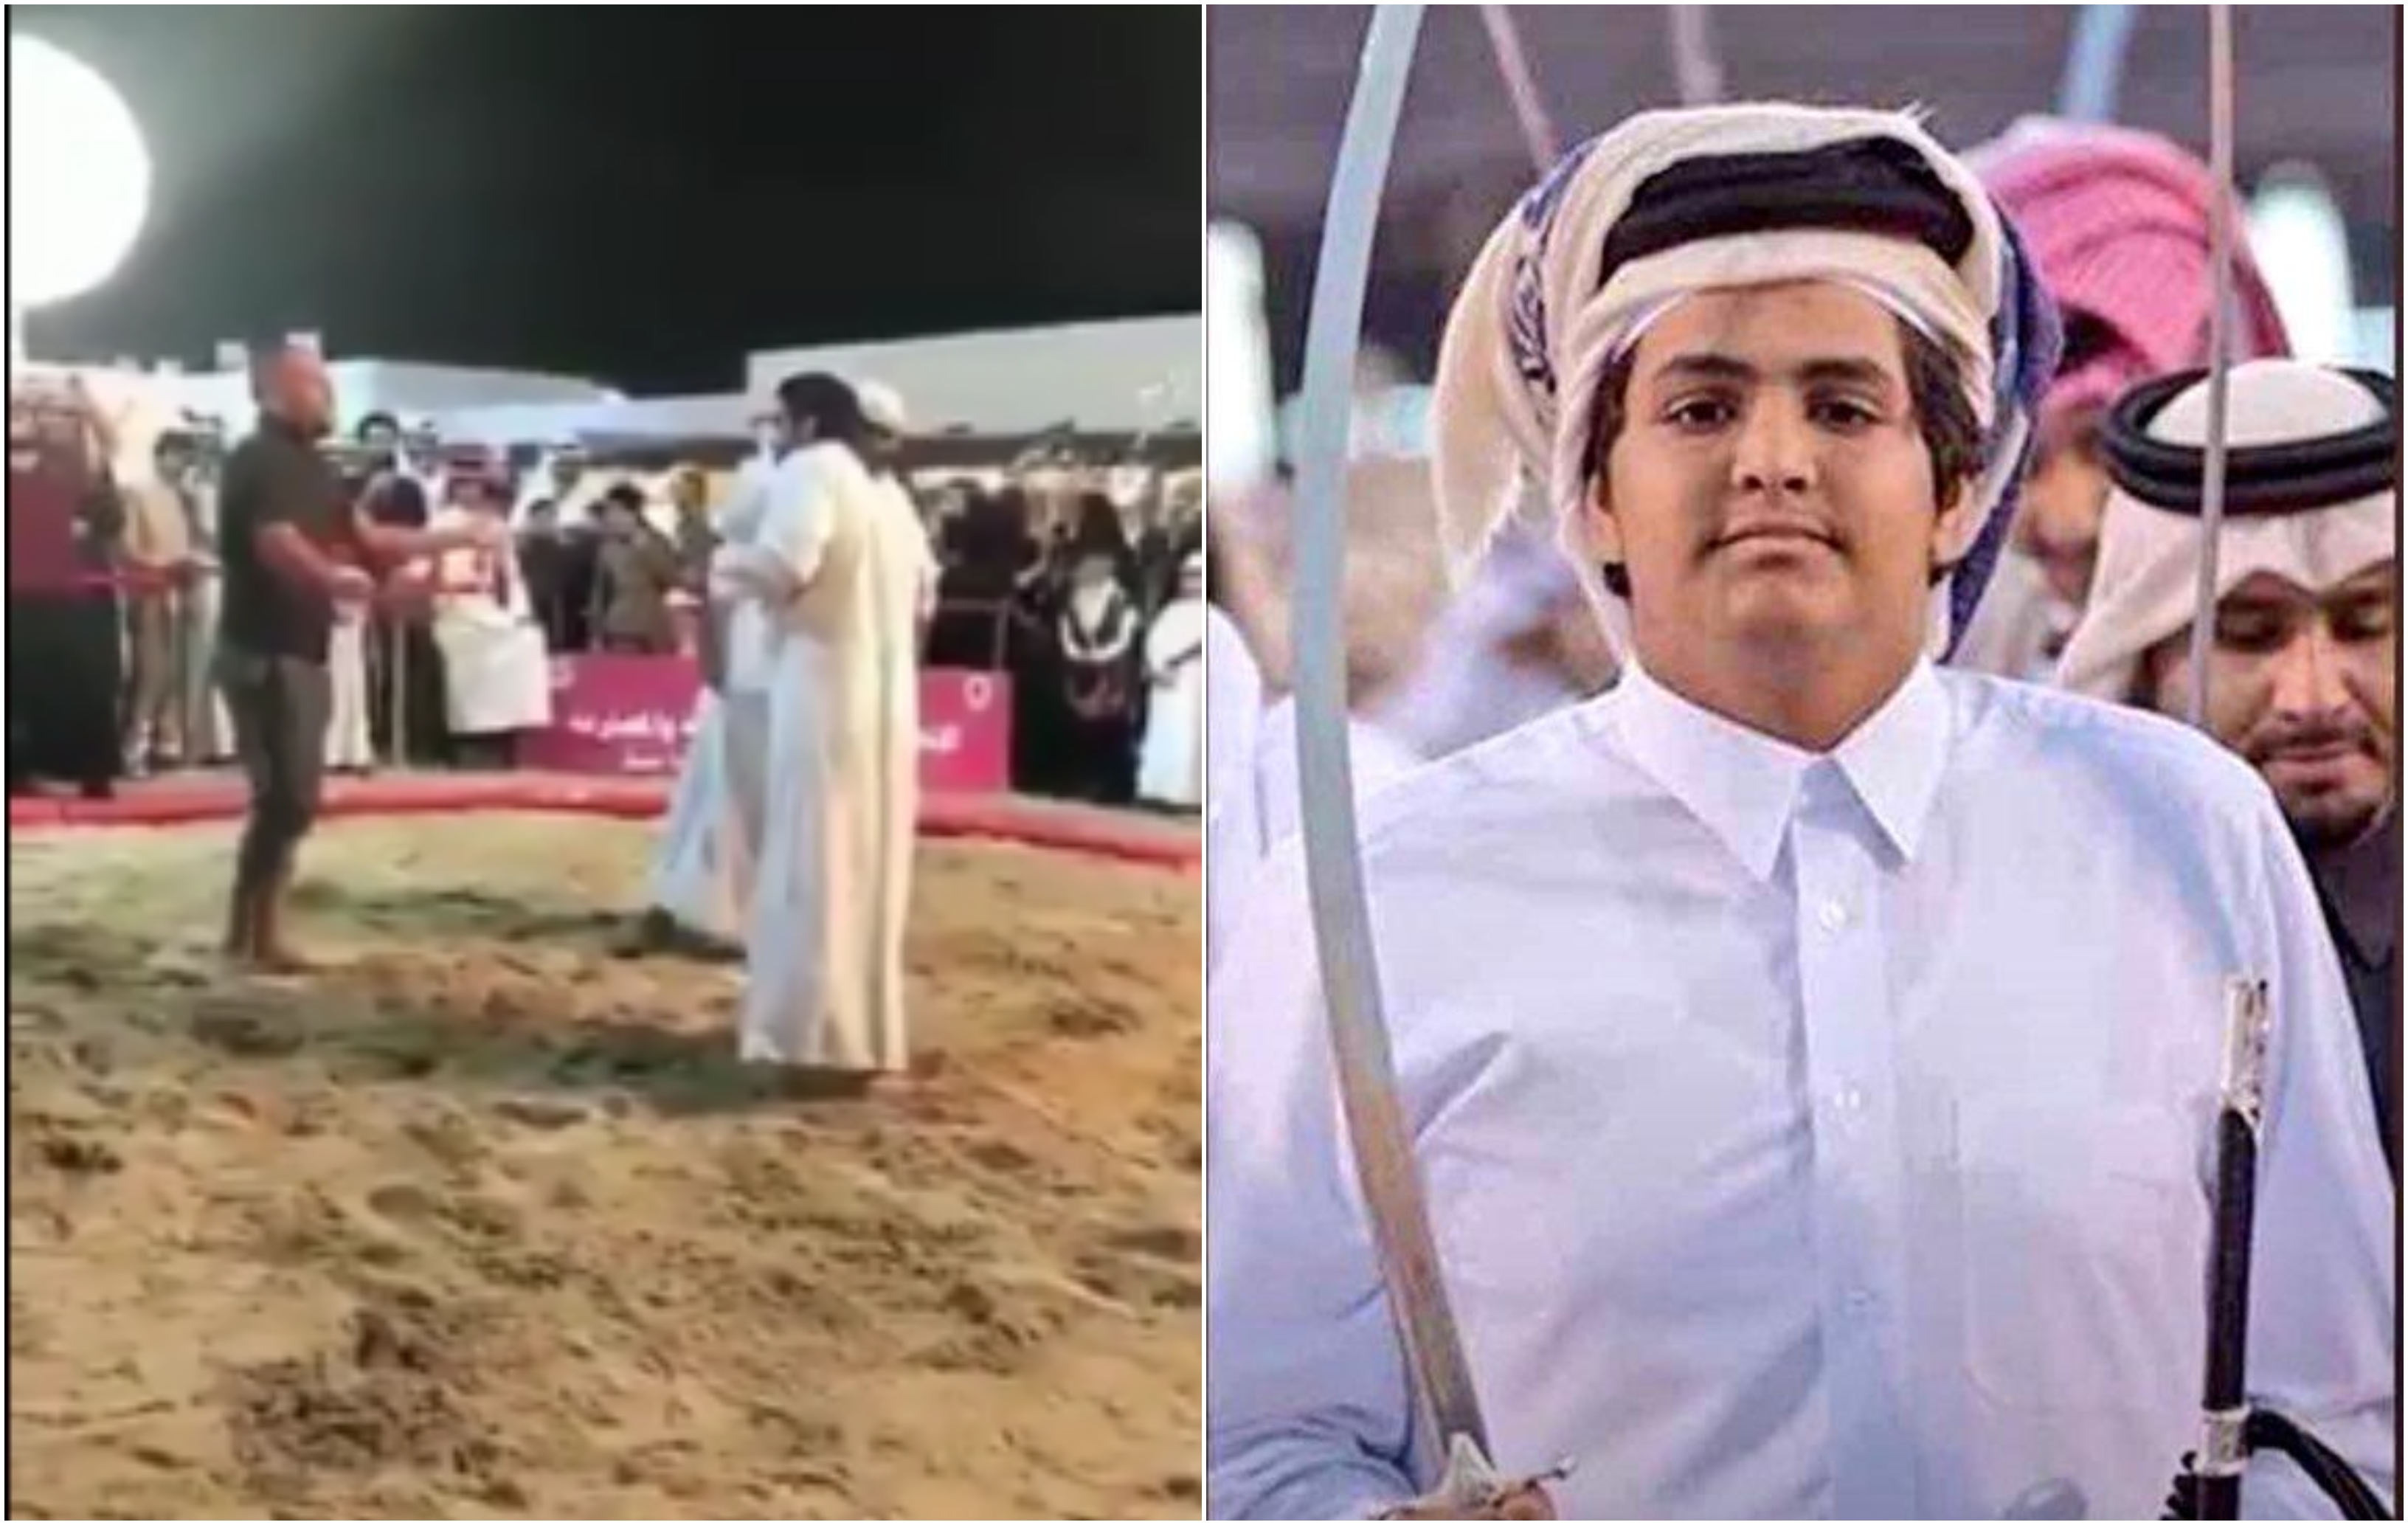 شاهد : الشيخ "القعقاع" نجل أمير قطر السابق يعتدي على مصارعٍ بعدما رفعه الأخير  في الهواء وأسقطه على الأرض